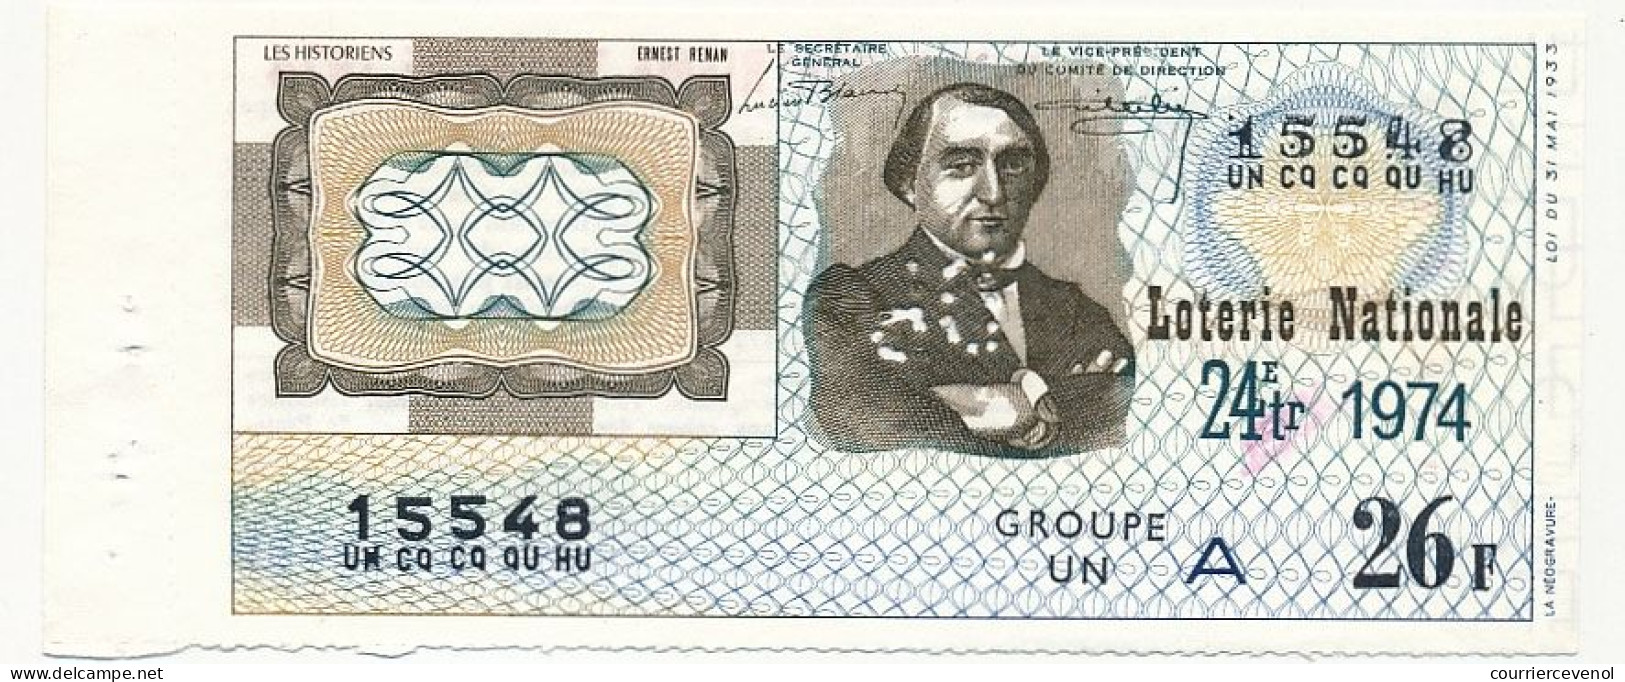 FRANCE - Loterie Nationale - Les Historiens - Ernest Renan - 24ème Tranche - 1974 - Perforation - Biglietti Della Lotteria